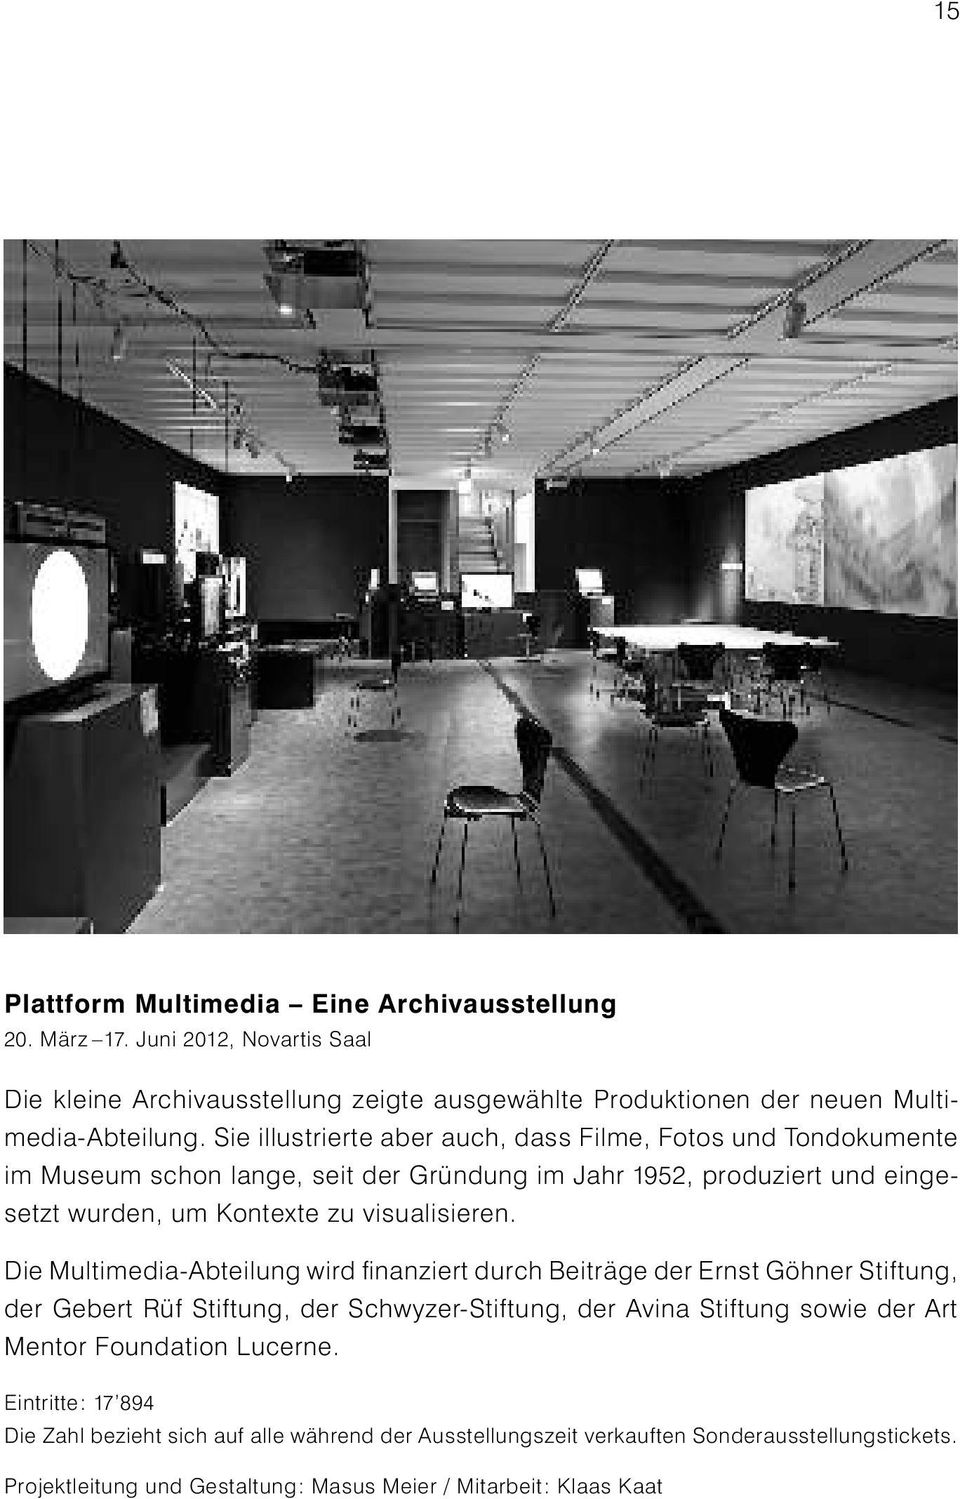 Die Multimedia-Abteilung wird finanziert durch Beiträge der Ernst Göhner Stiftung, der Gebert Rüf Stiftung, der Schwyzer-Stiftung, der Avina Stiftung sowie der Art Mentor Foundation